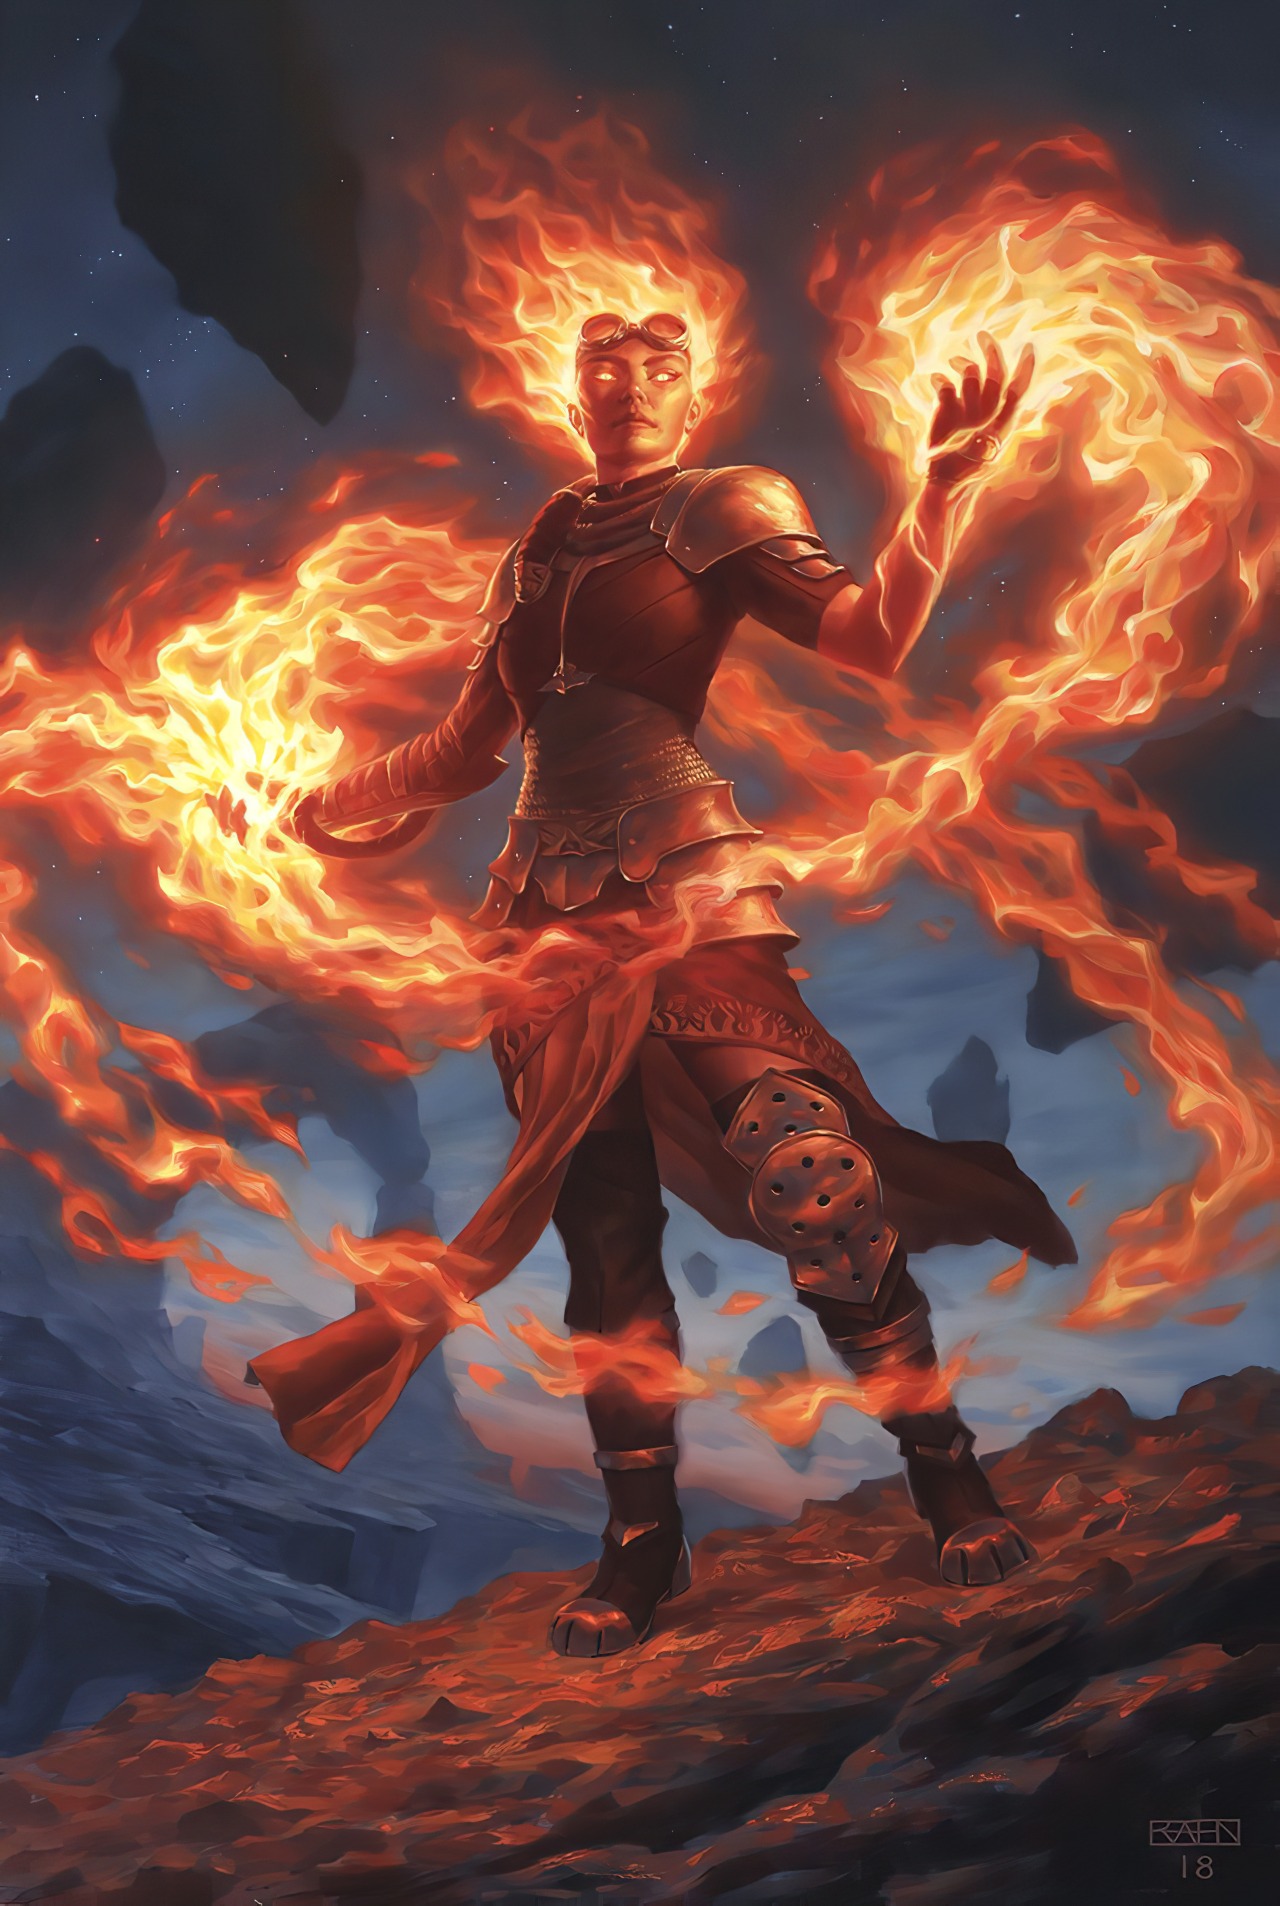 Chandra, Awakened Inferno by Chris Rahn #Magic the Gathering #MtG #Core Set 2020 #Magic 2020#Chandra Nalaar #Chandra Awakened Inferno #Planeswalker#Fantasy#Art#Chris Rahn